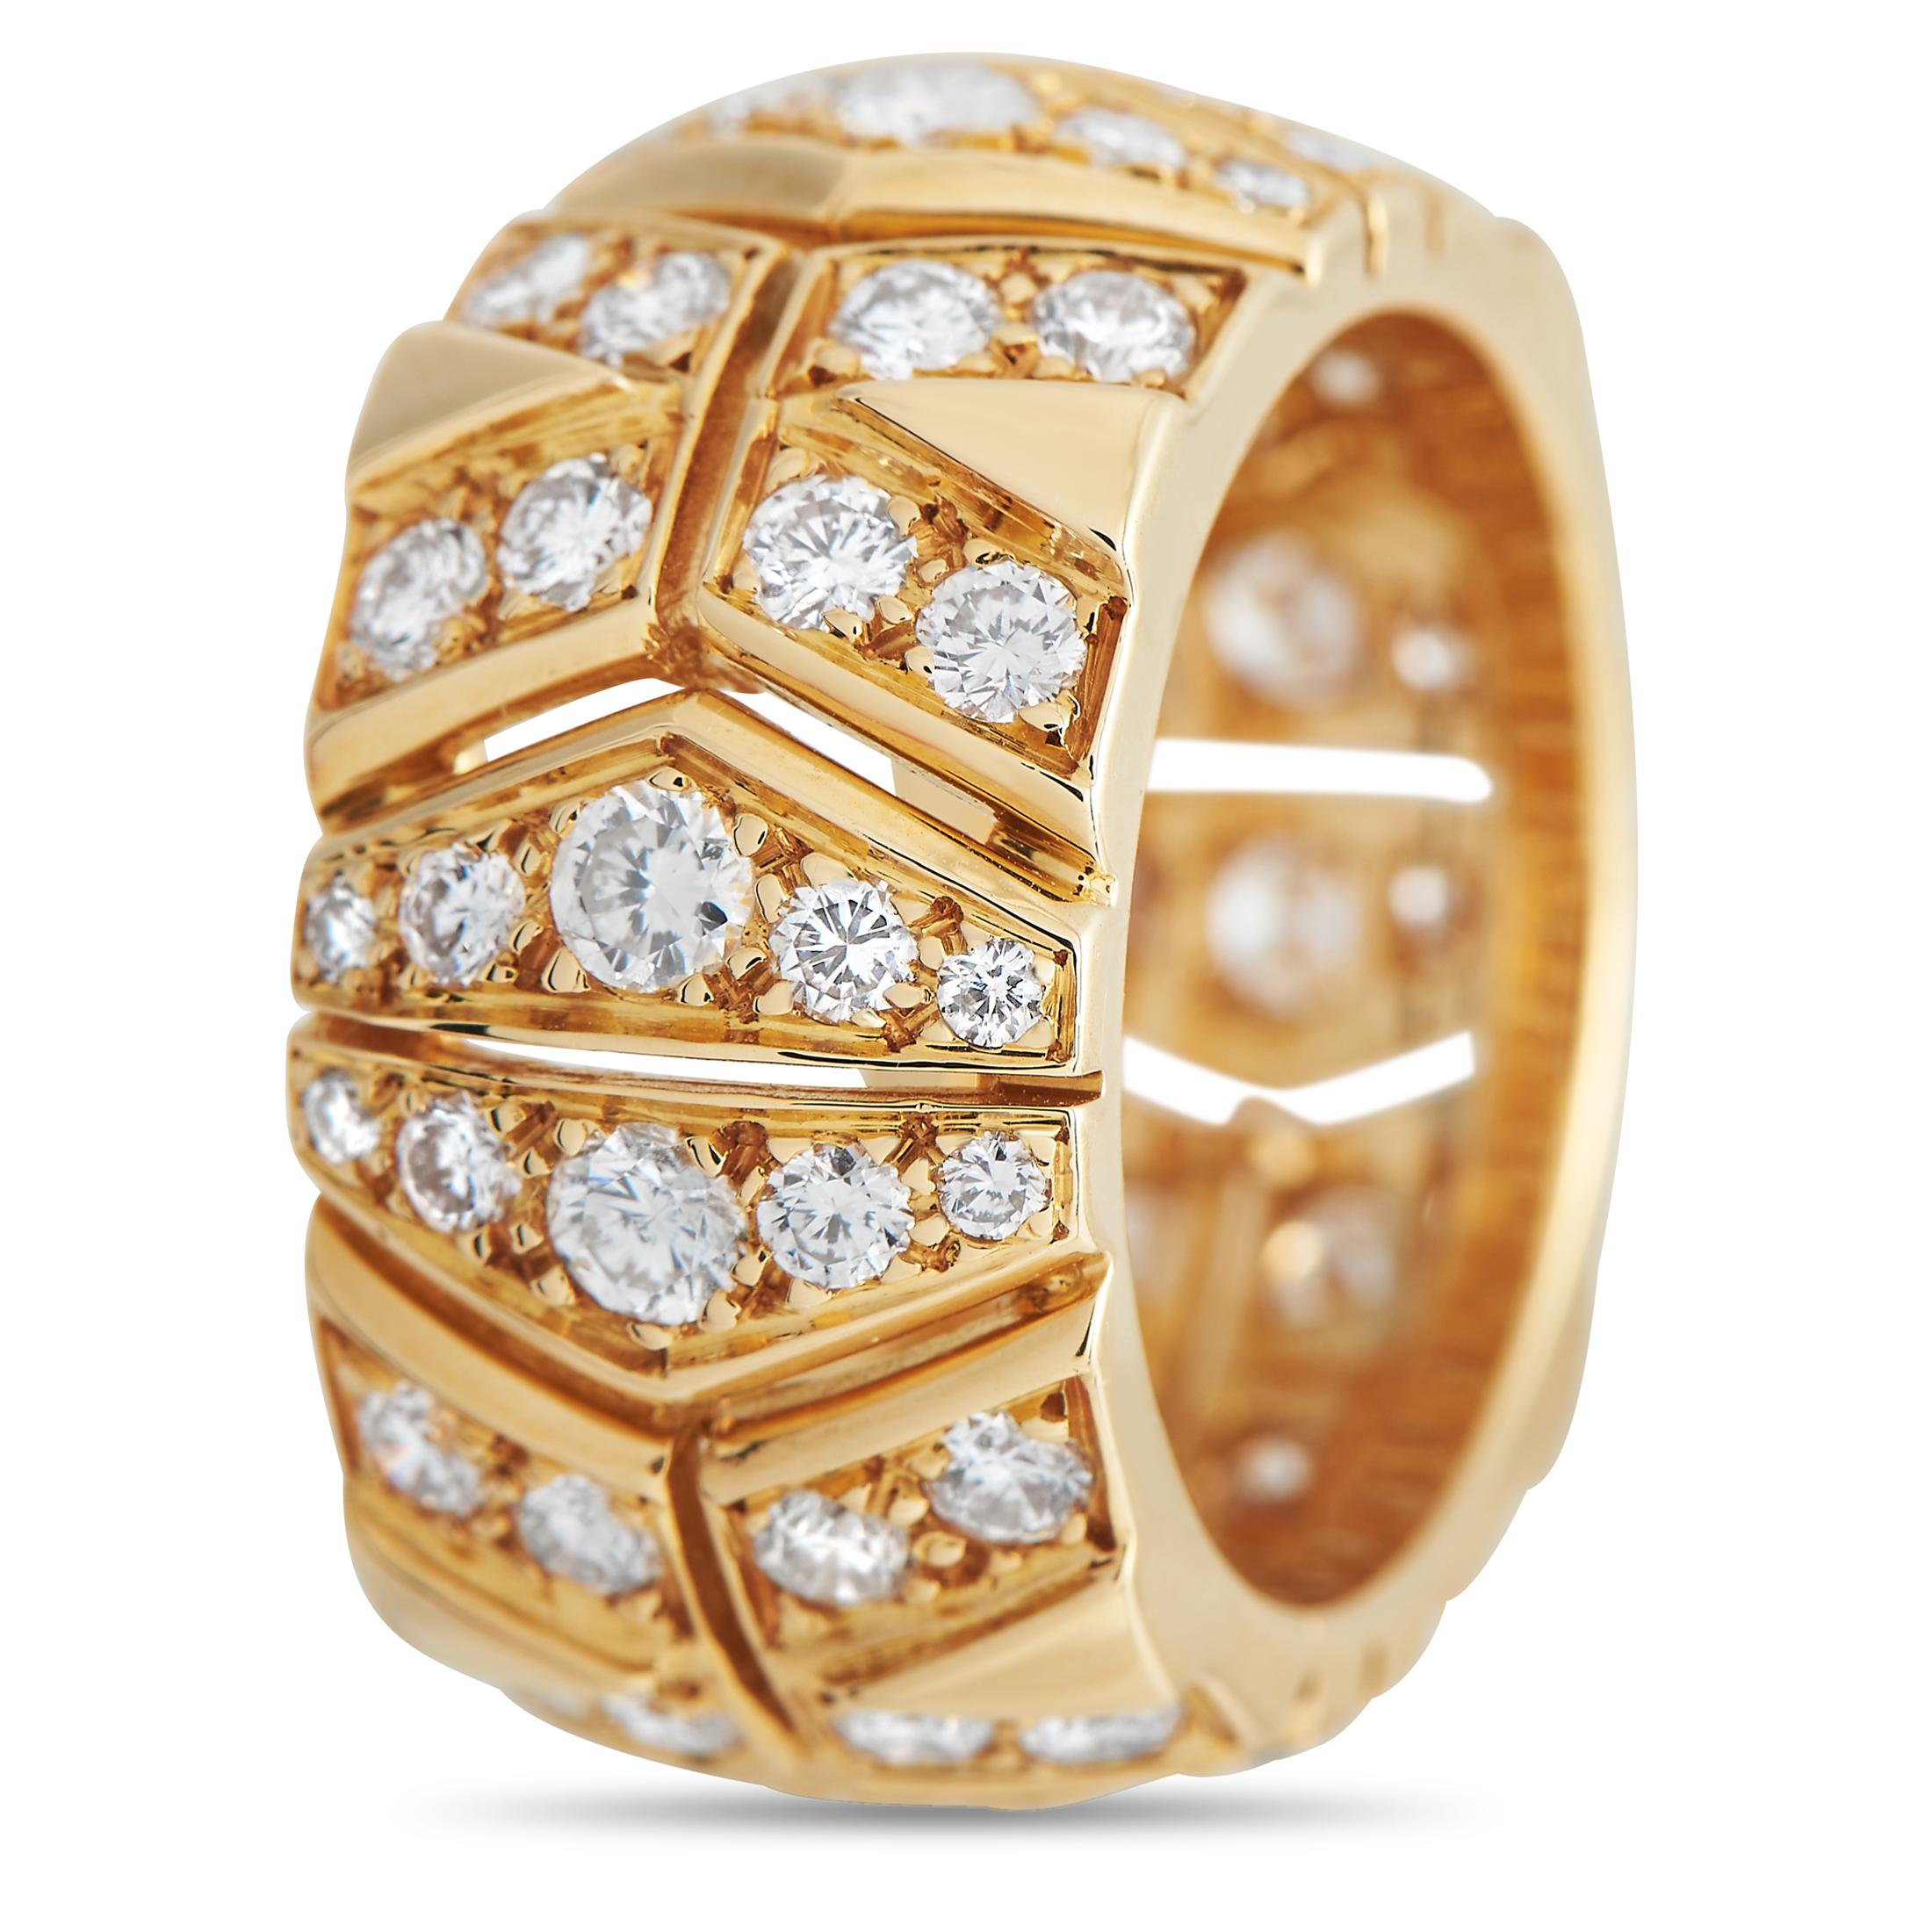 Diamanten mit einem Gesamtgewicht von 2,25 Karat lassen diesen schlichten, eleganten Rivoli-Ring von Cartier mühelos das Licht einfangen. Dieser luxuriöse Ring ist 10 mm breit und eignet sich ideal für den täglichen Gebrauch. Dieses Schmuckstück